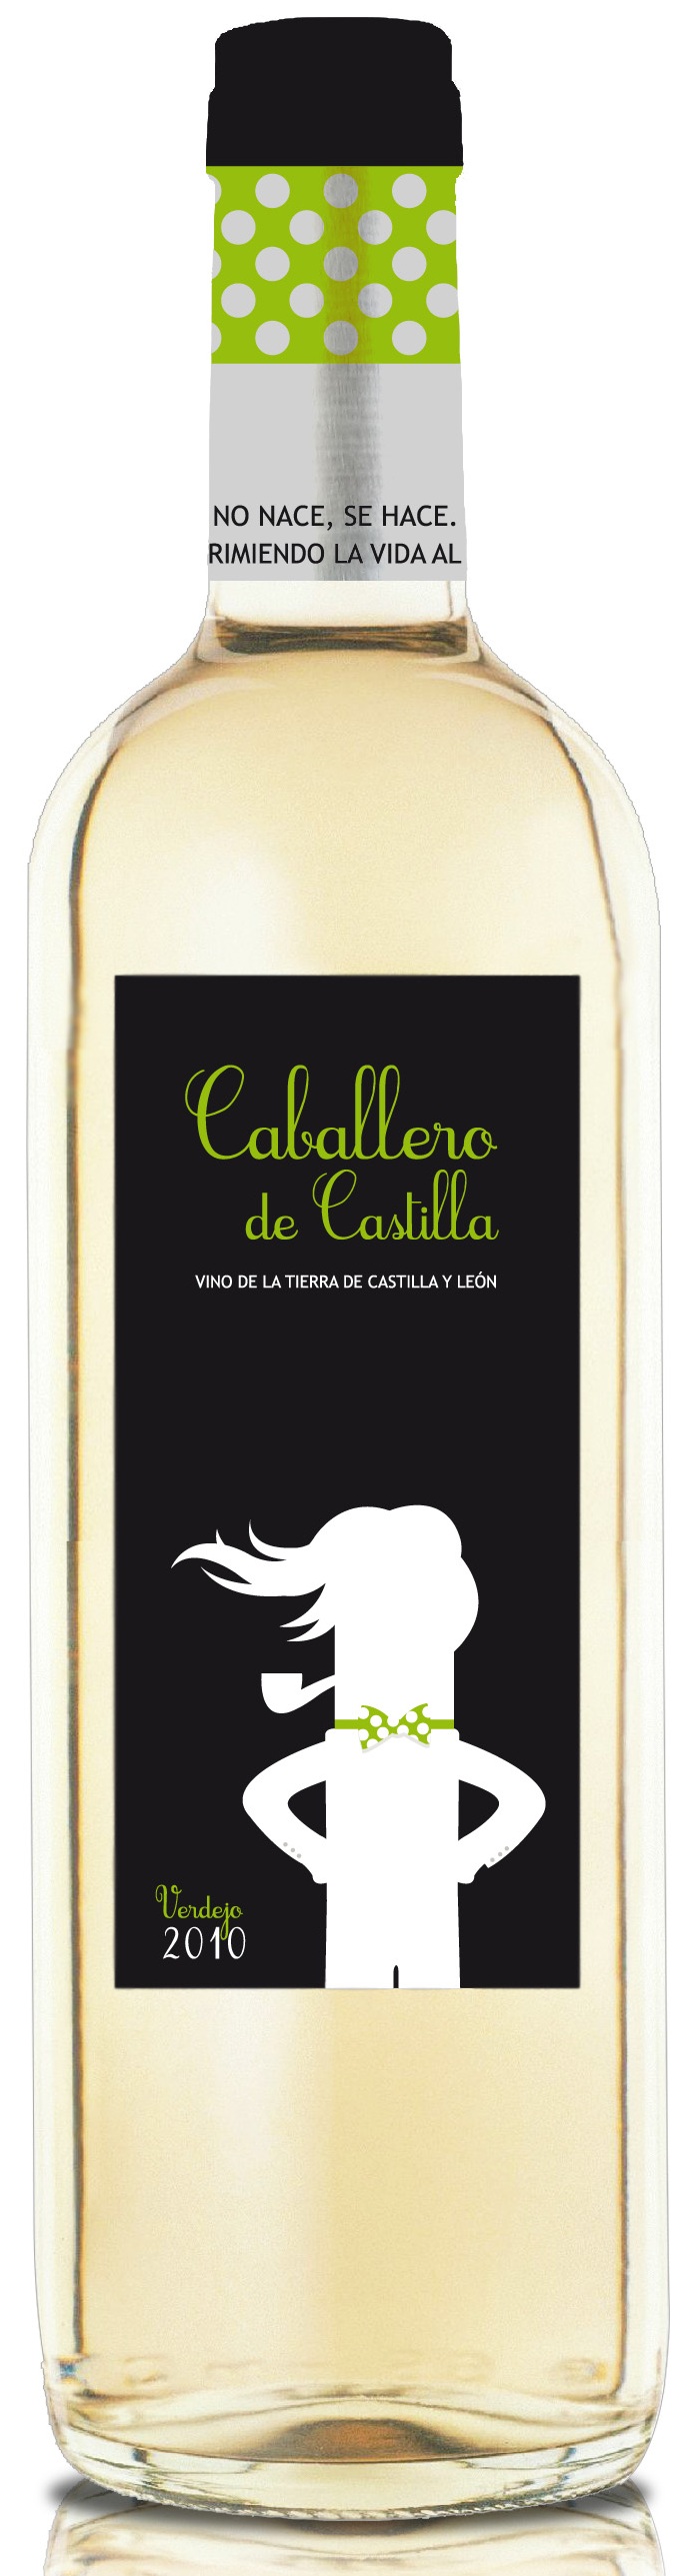 Logo del vino Caballero de Castilla Verdejo